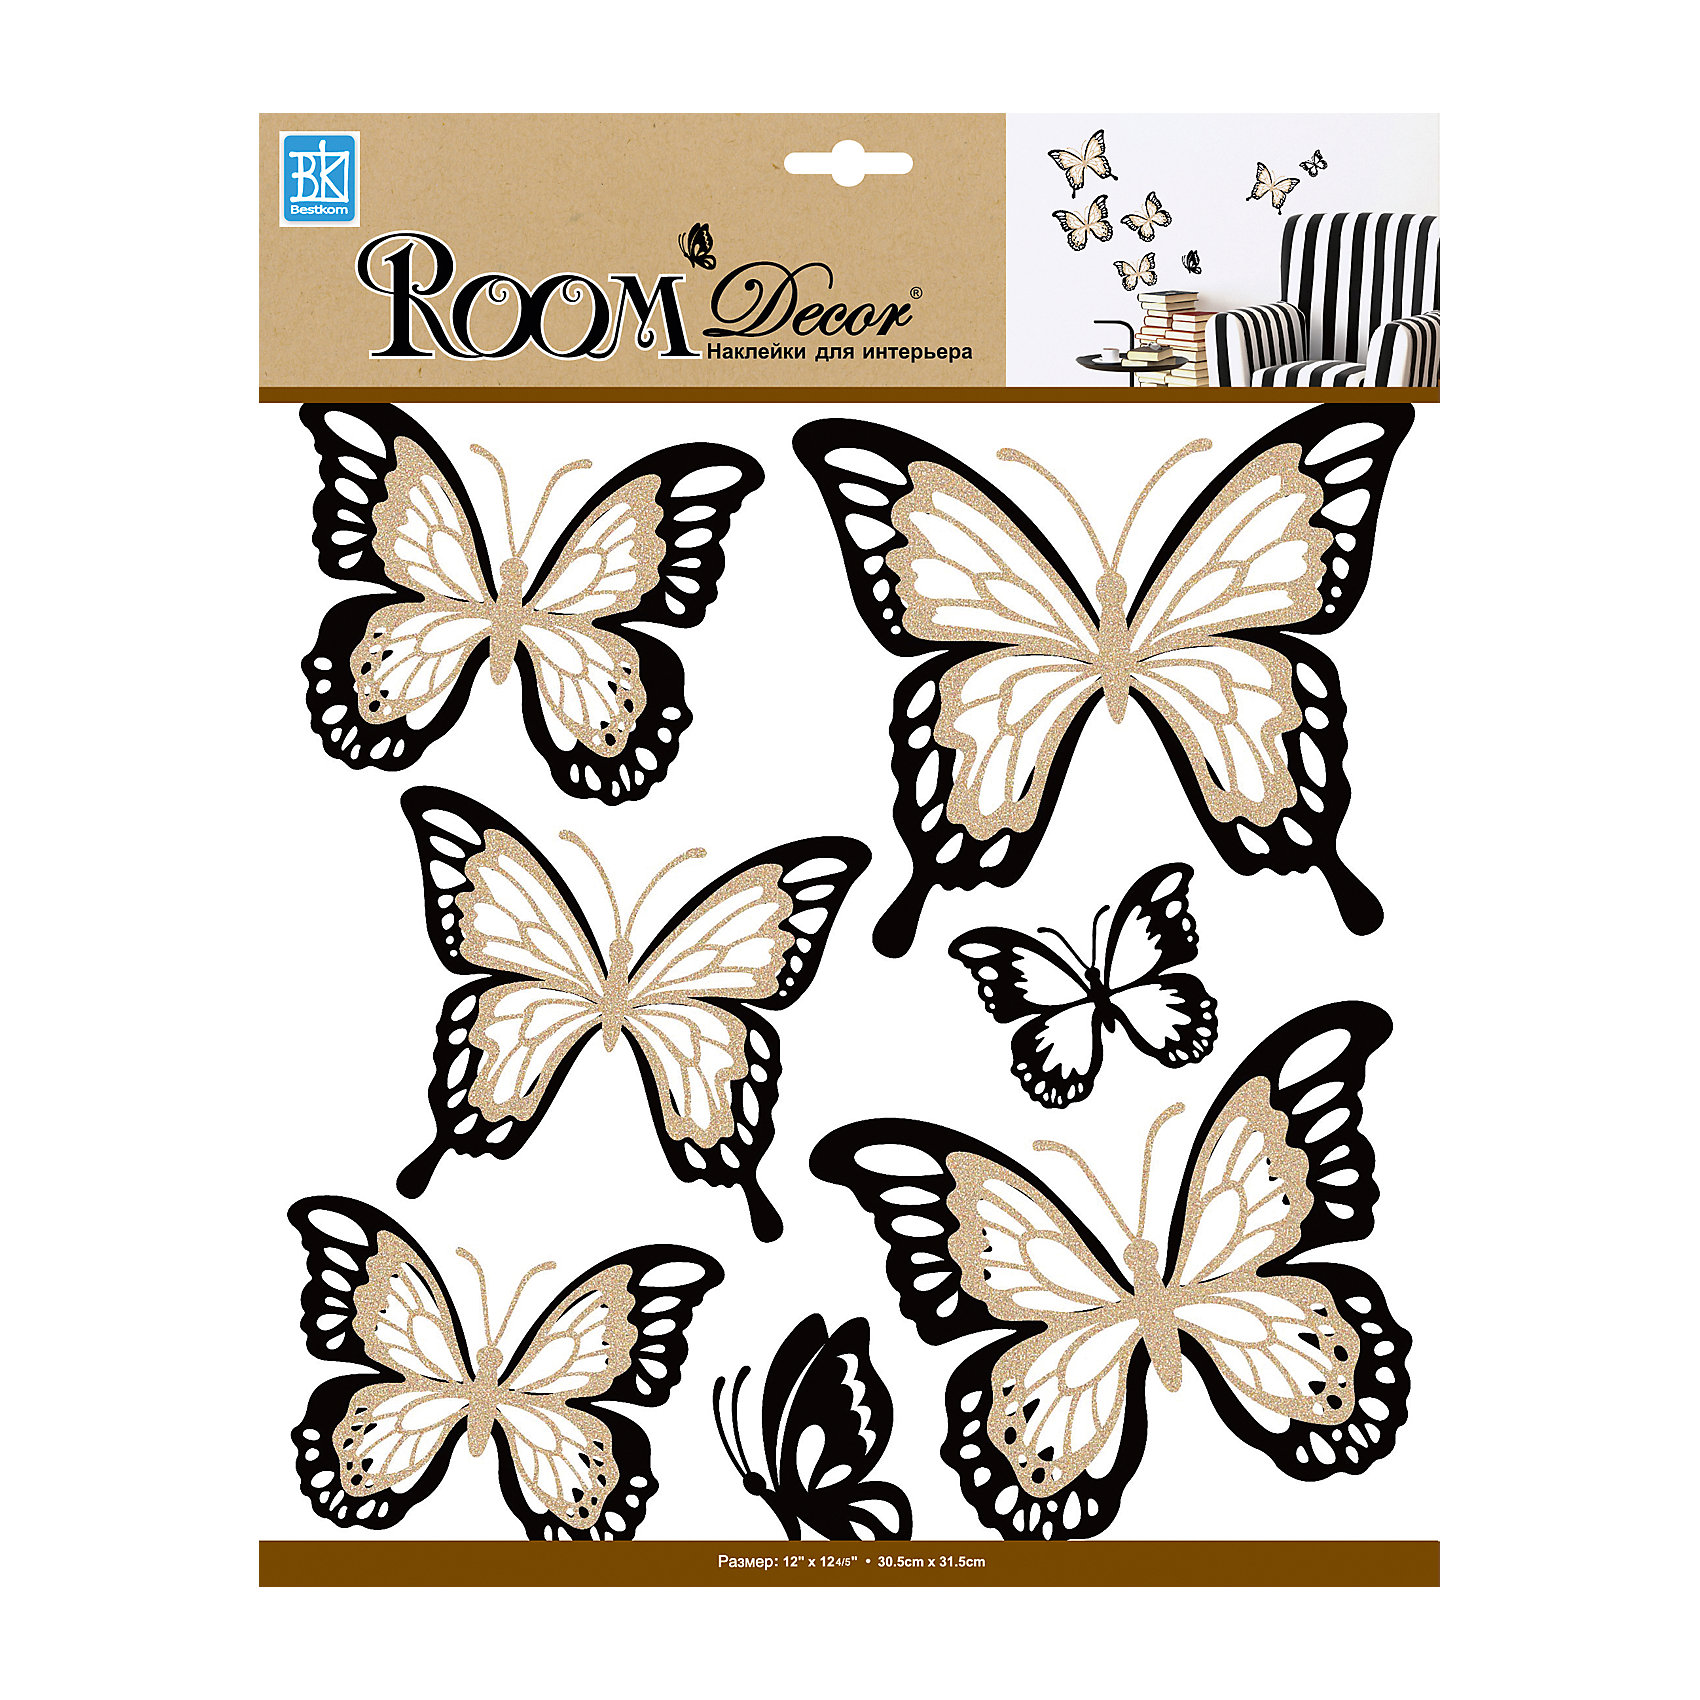 Room Decor наклейки для интерьера бабочки